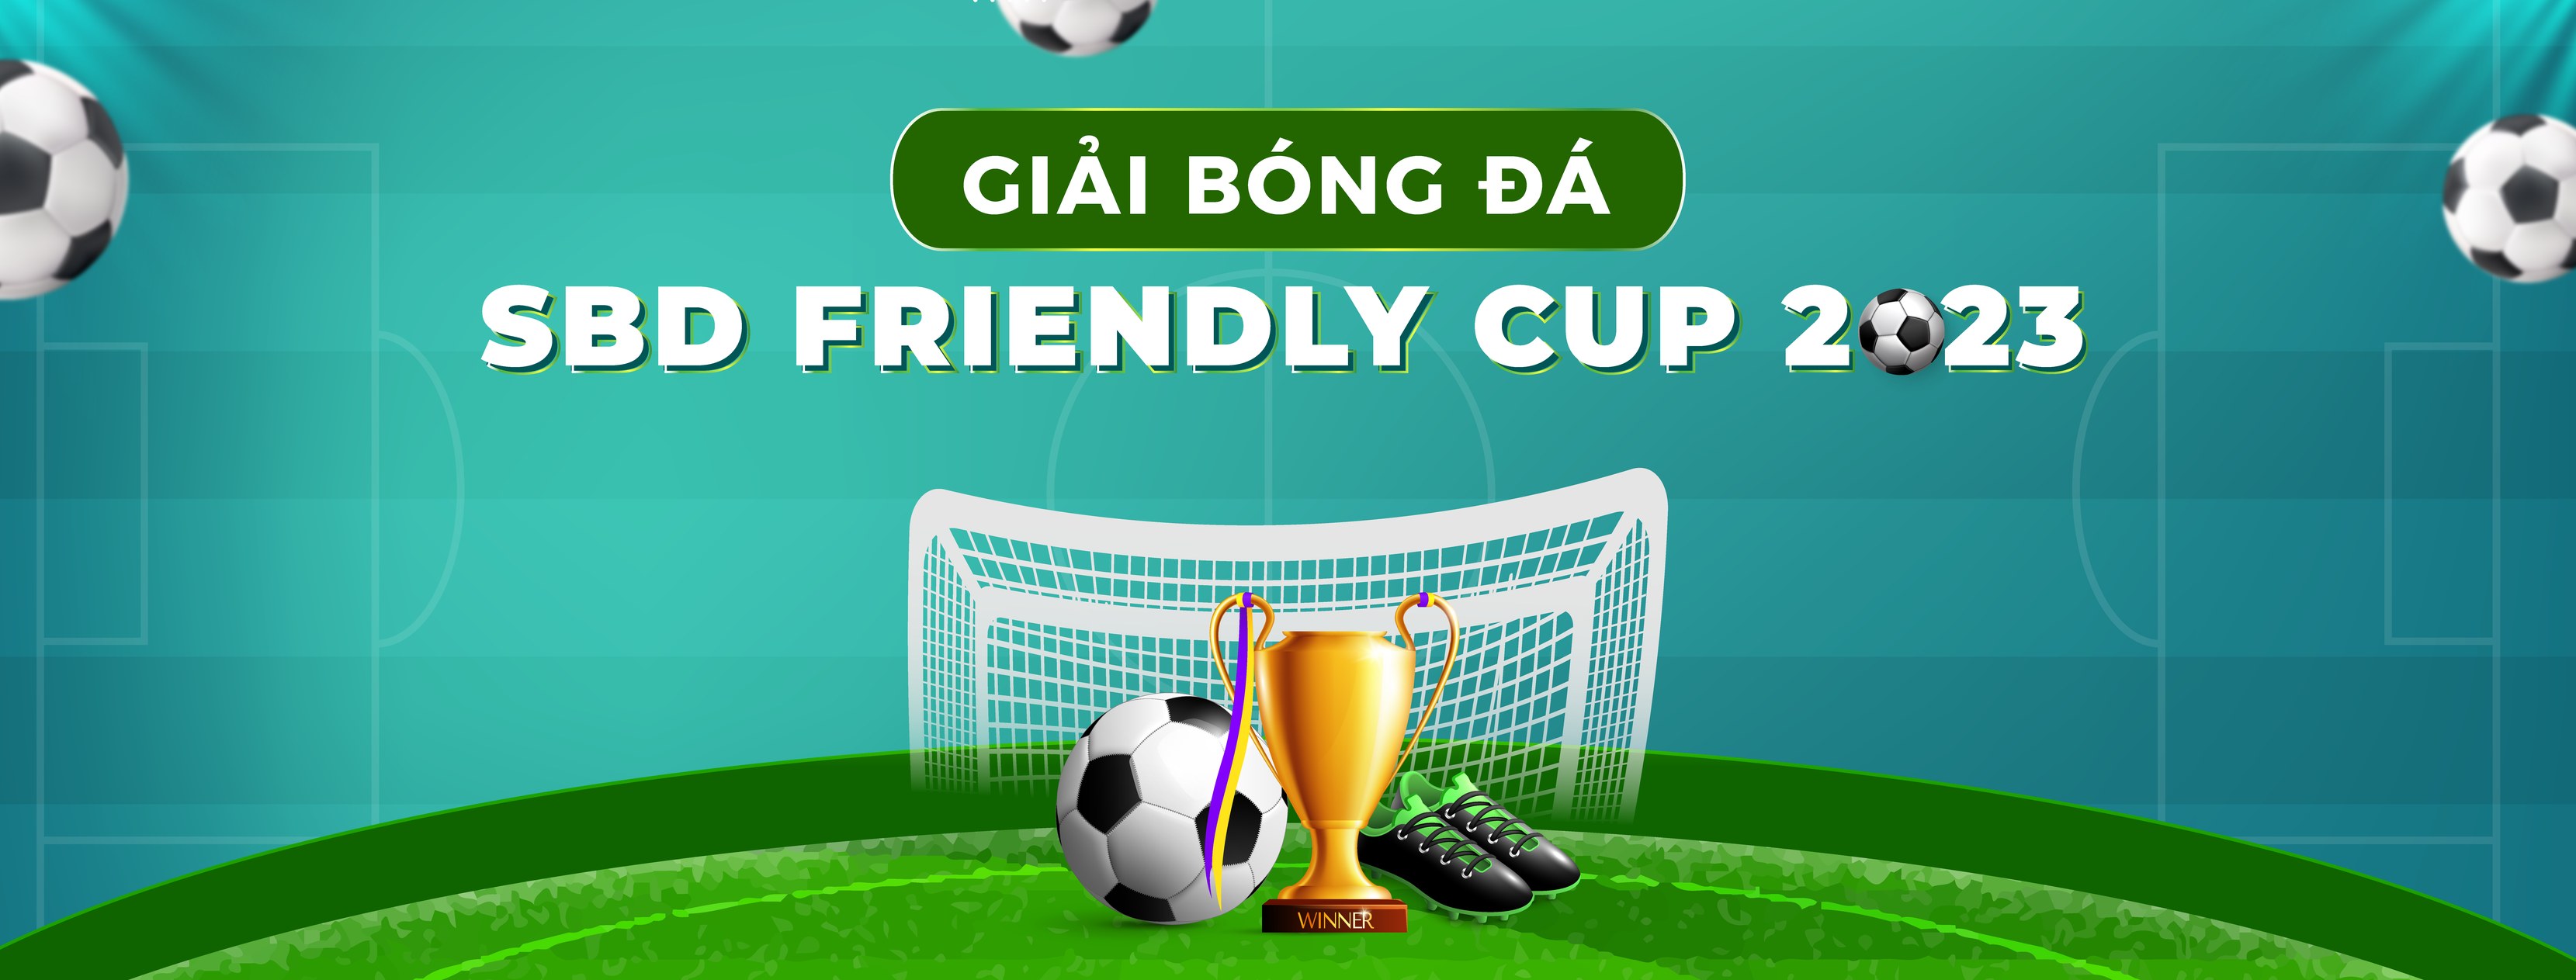 Tổng kết giải bóng đá "SBD Friendly Cup 2023": FC SBD HN giải II & FC SBD HCM giải III